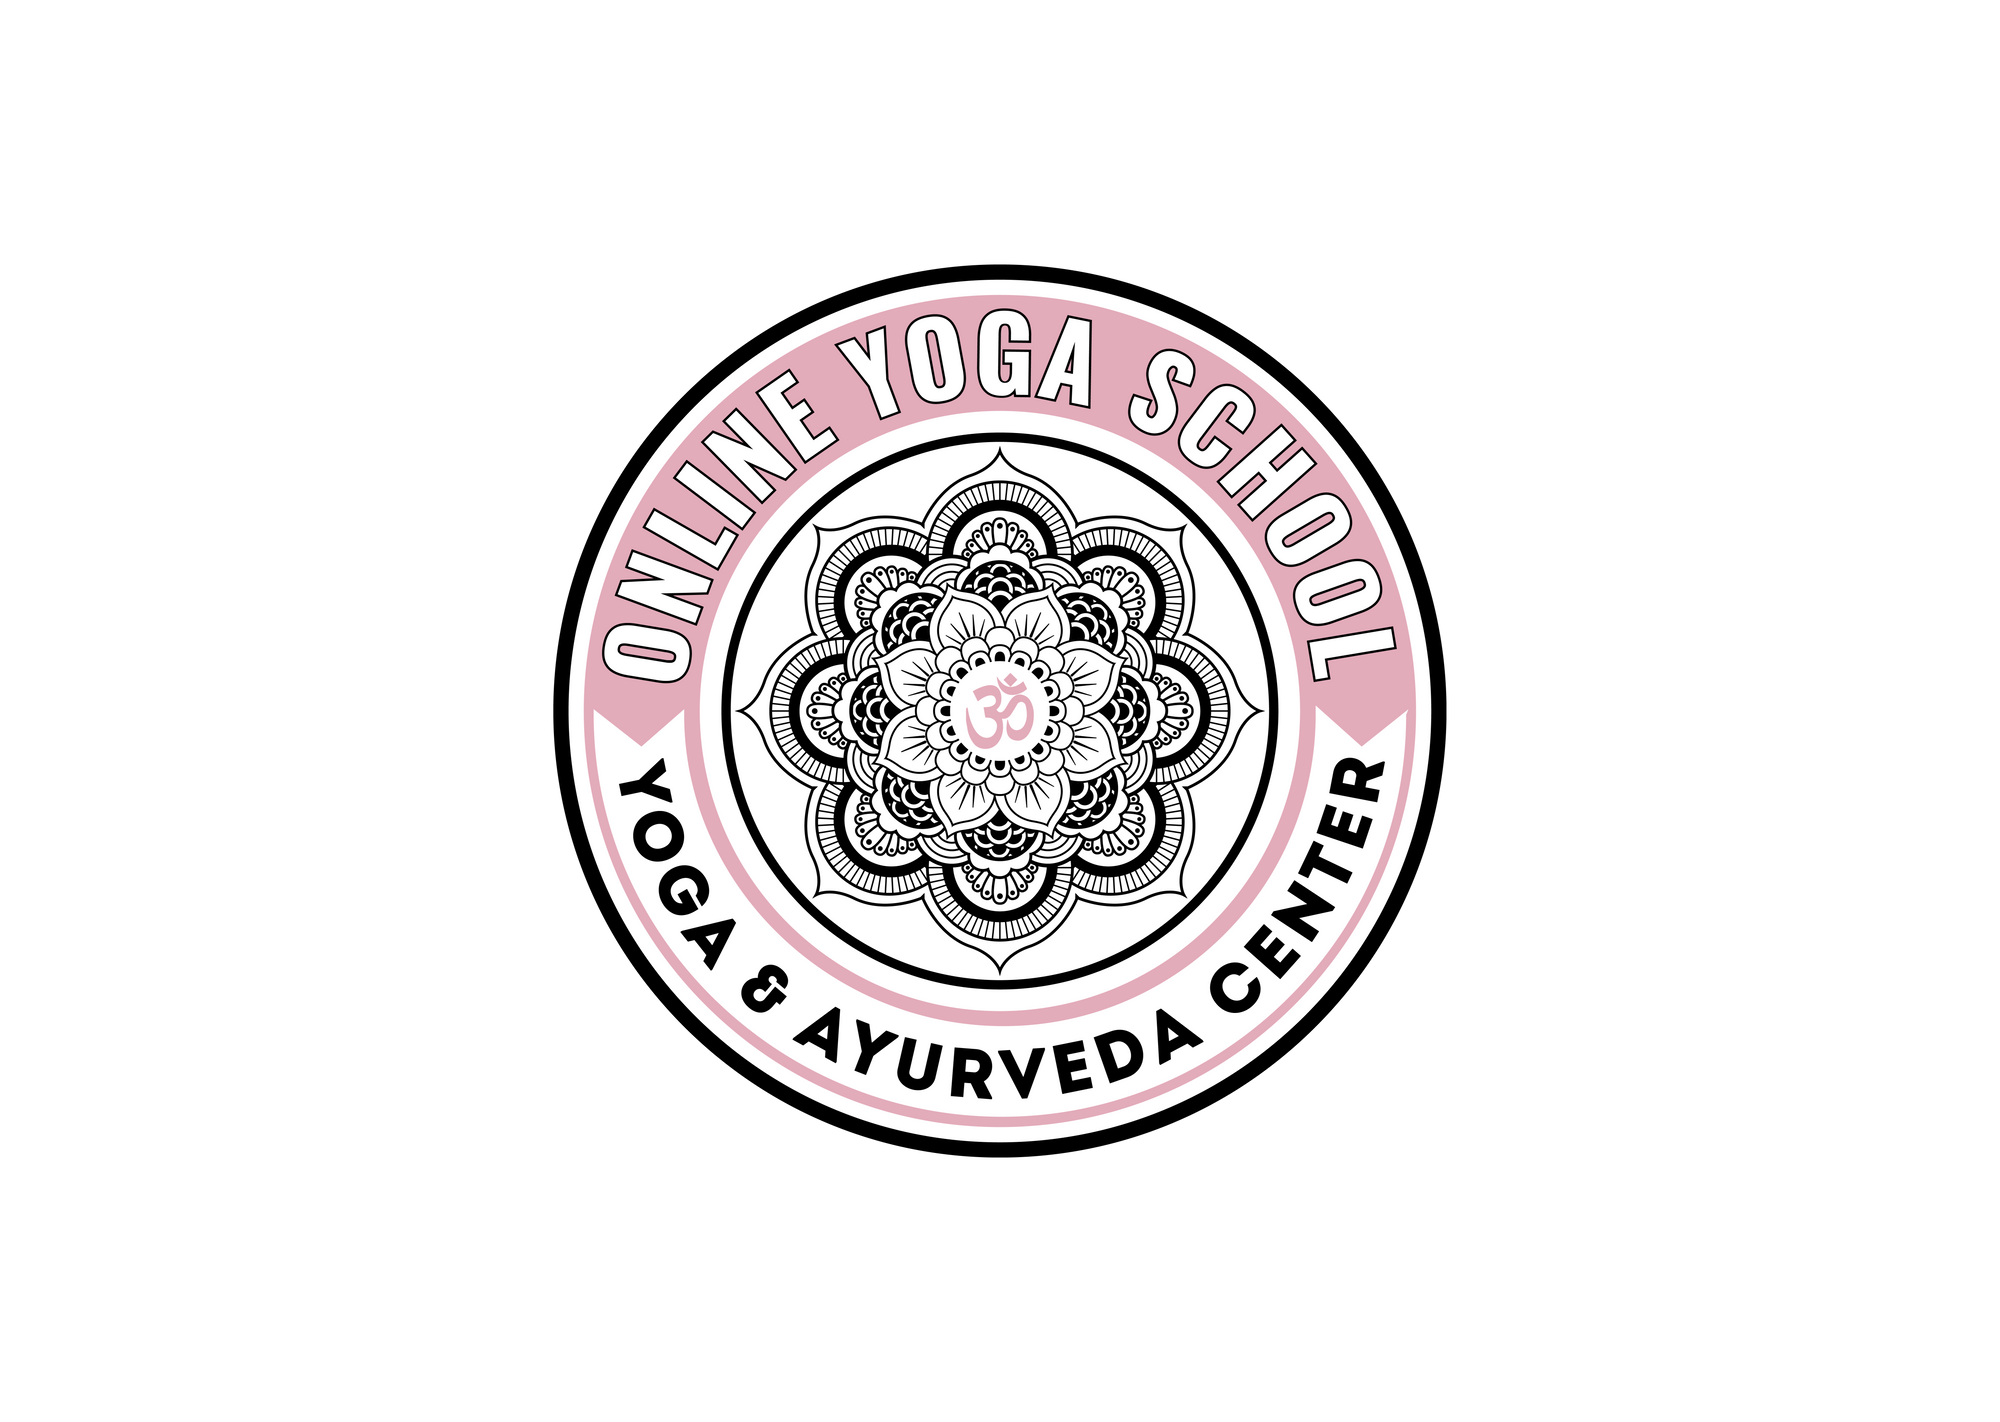 Certified, Grow, and Practice - Online Yoga School